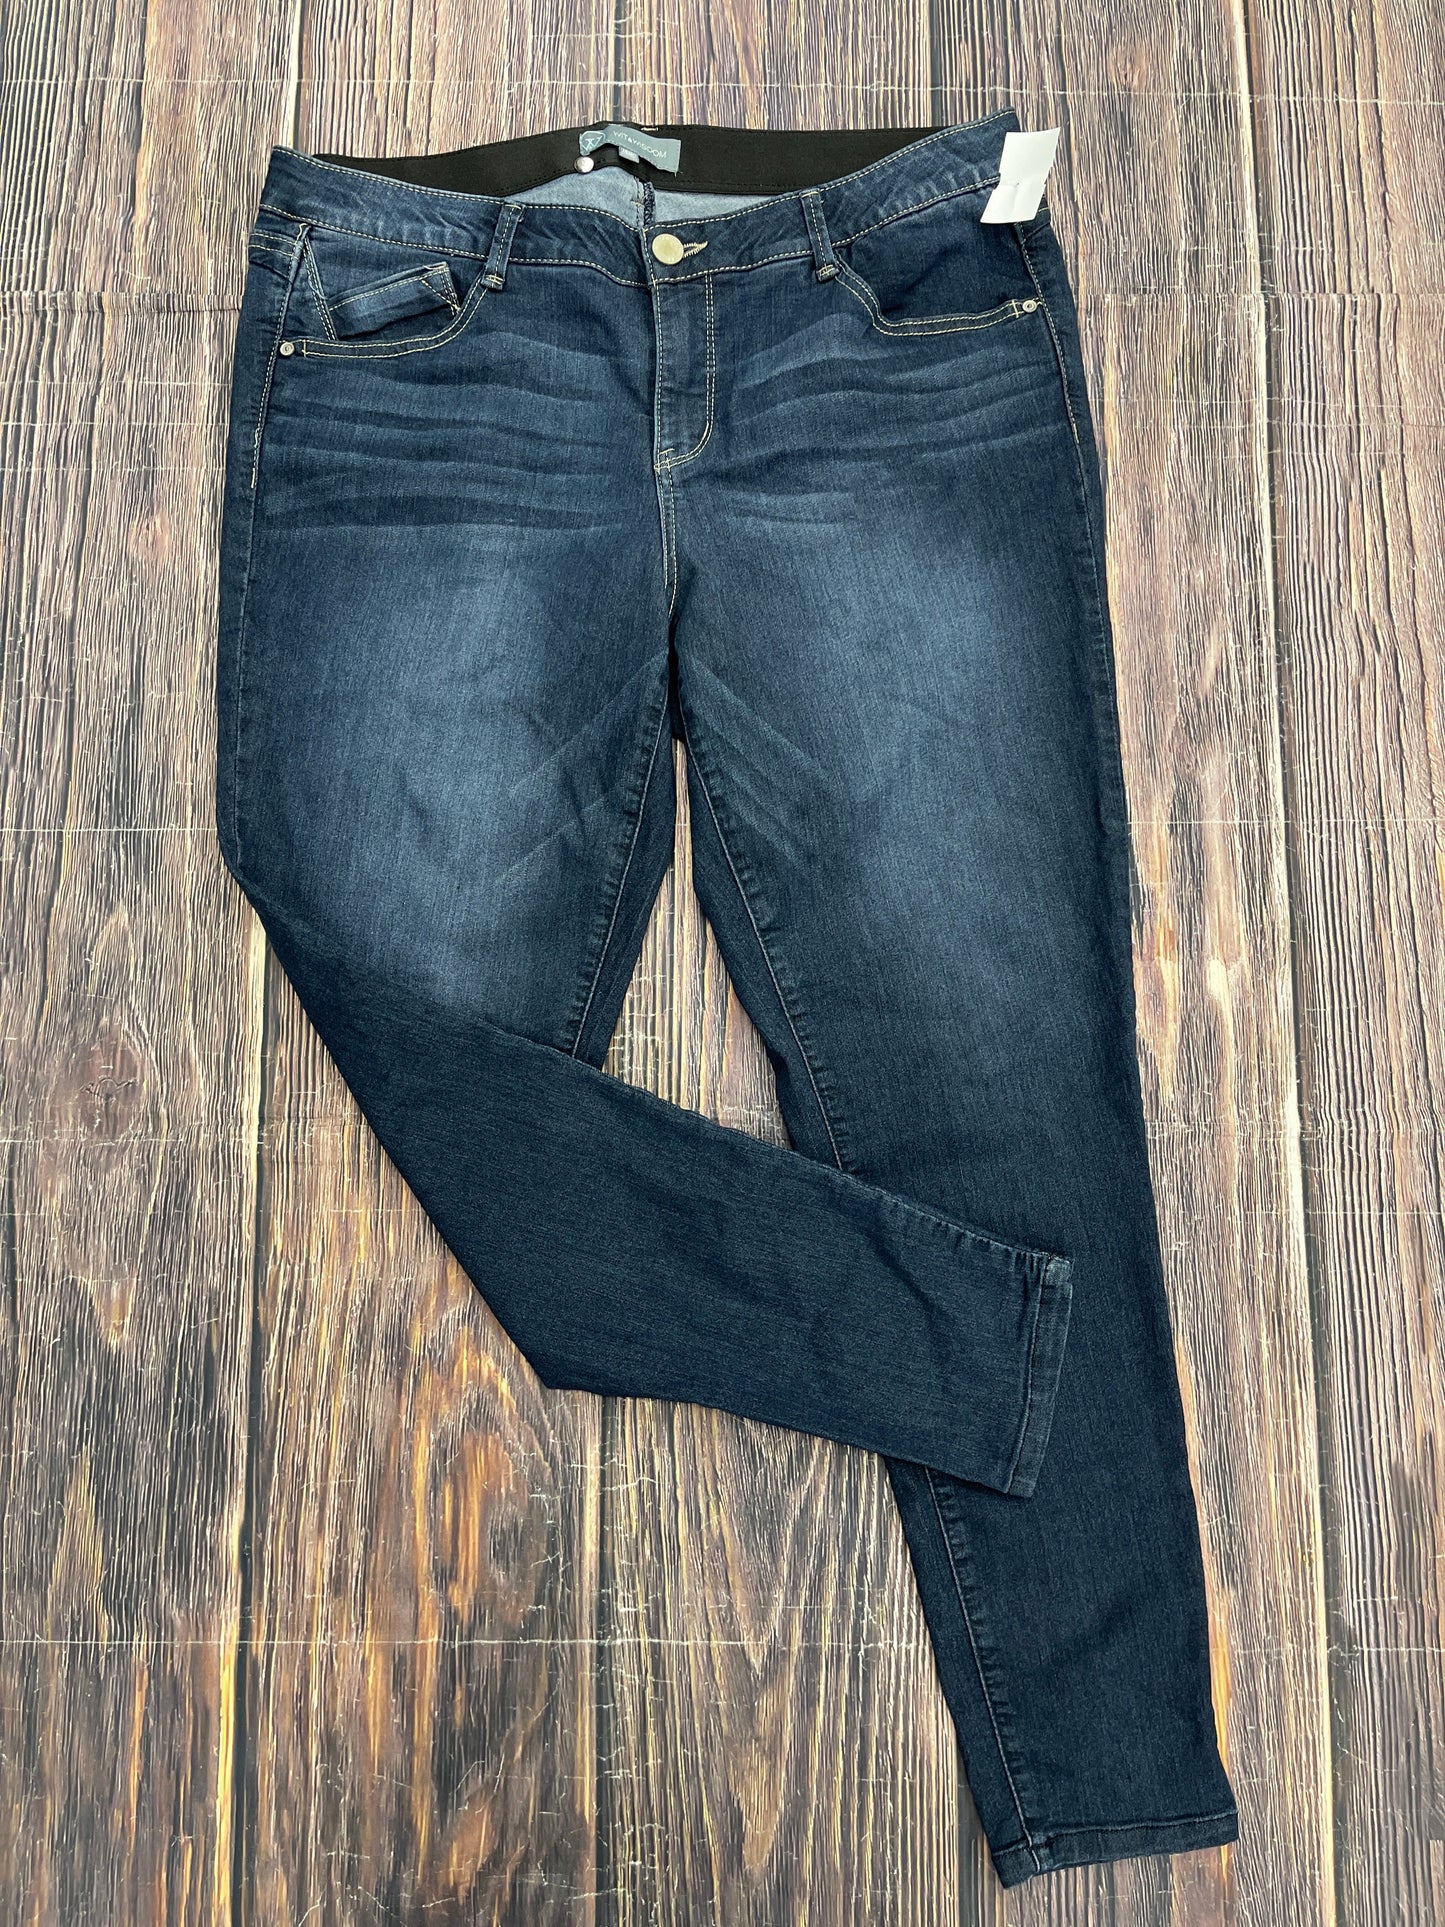 Blue Denim Jeans Skinny Wit & Wisdom, Size 18w